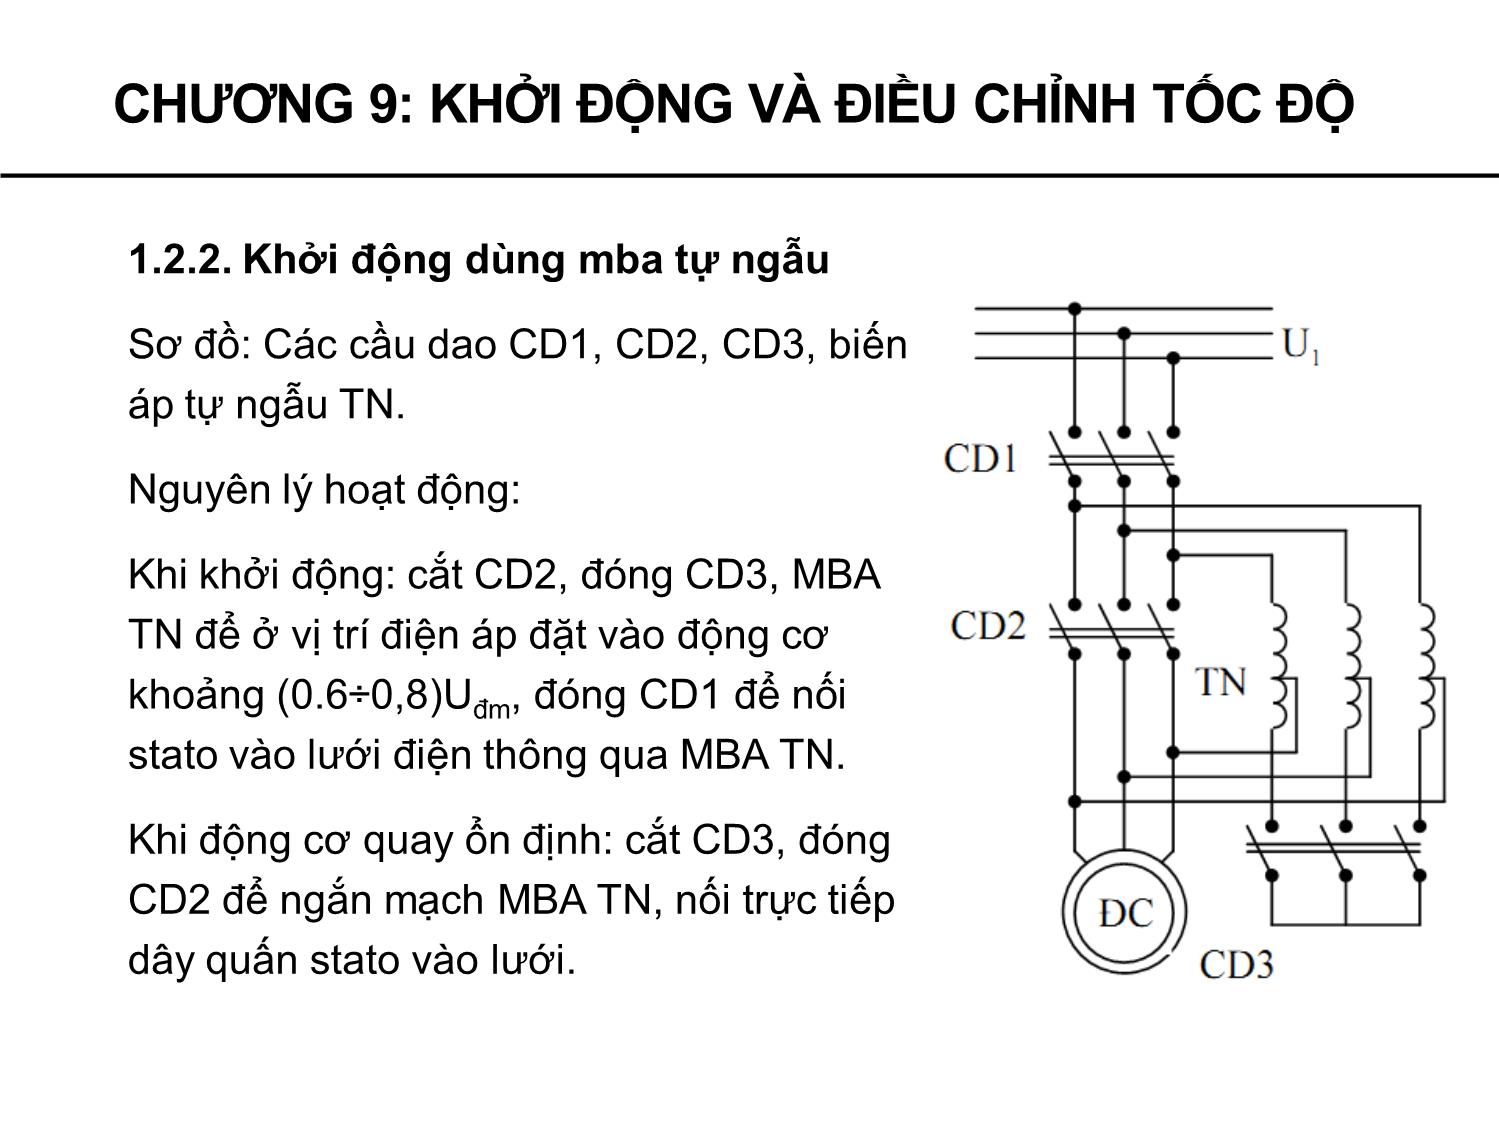 Bài giảng Máy điện - Chương 9: Khởi động và điều chỉnh tốc độ động cơ không đồng bộ - Phạm Khánh Tùng trang 9